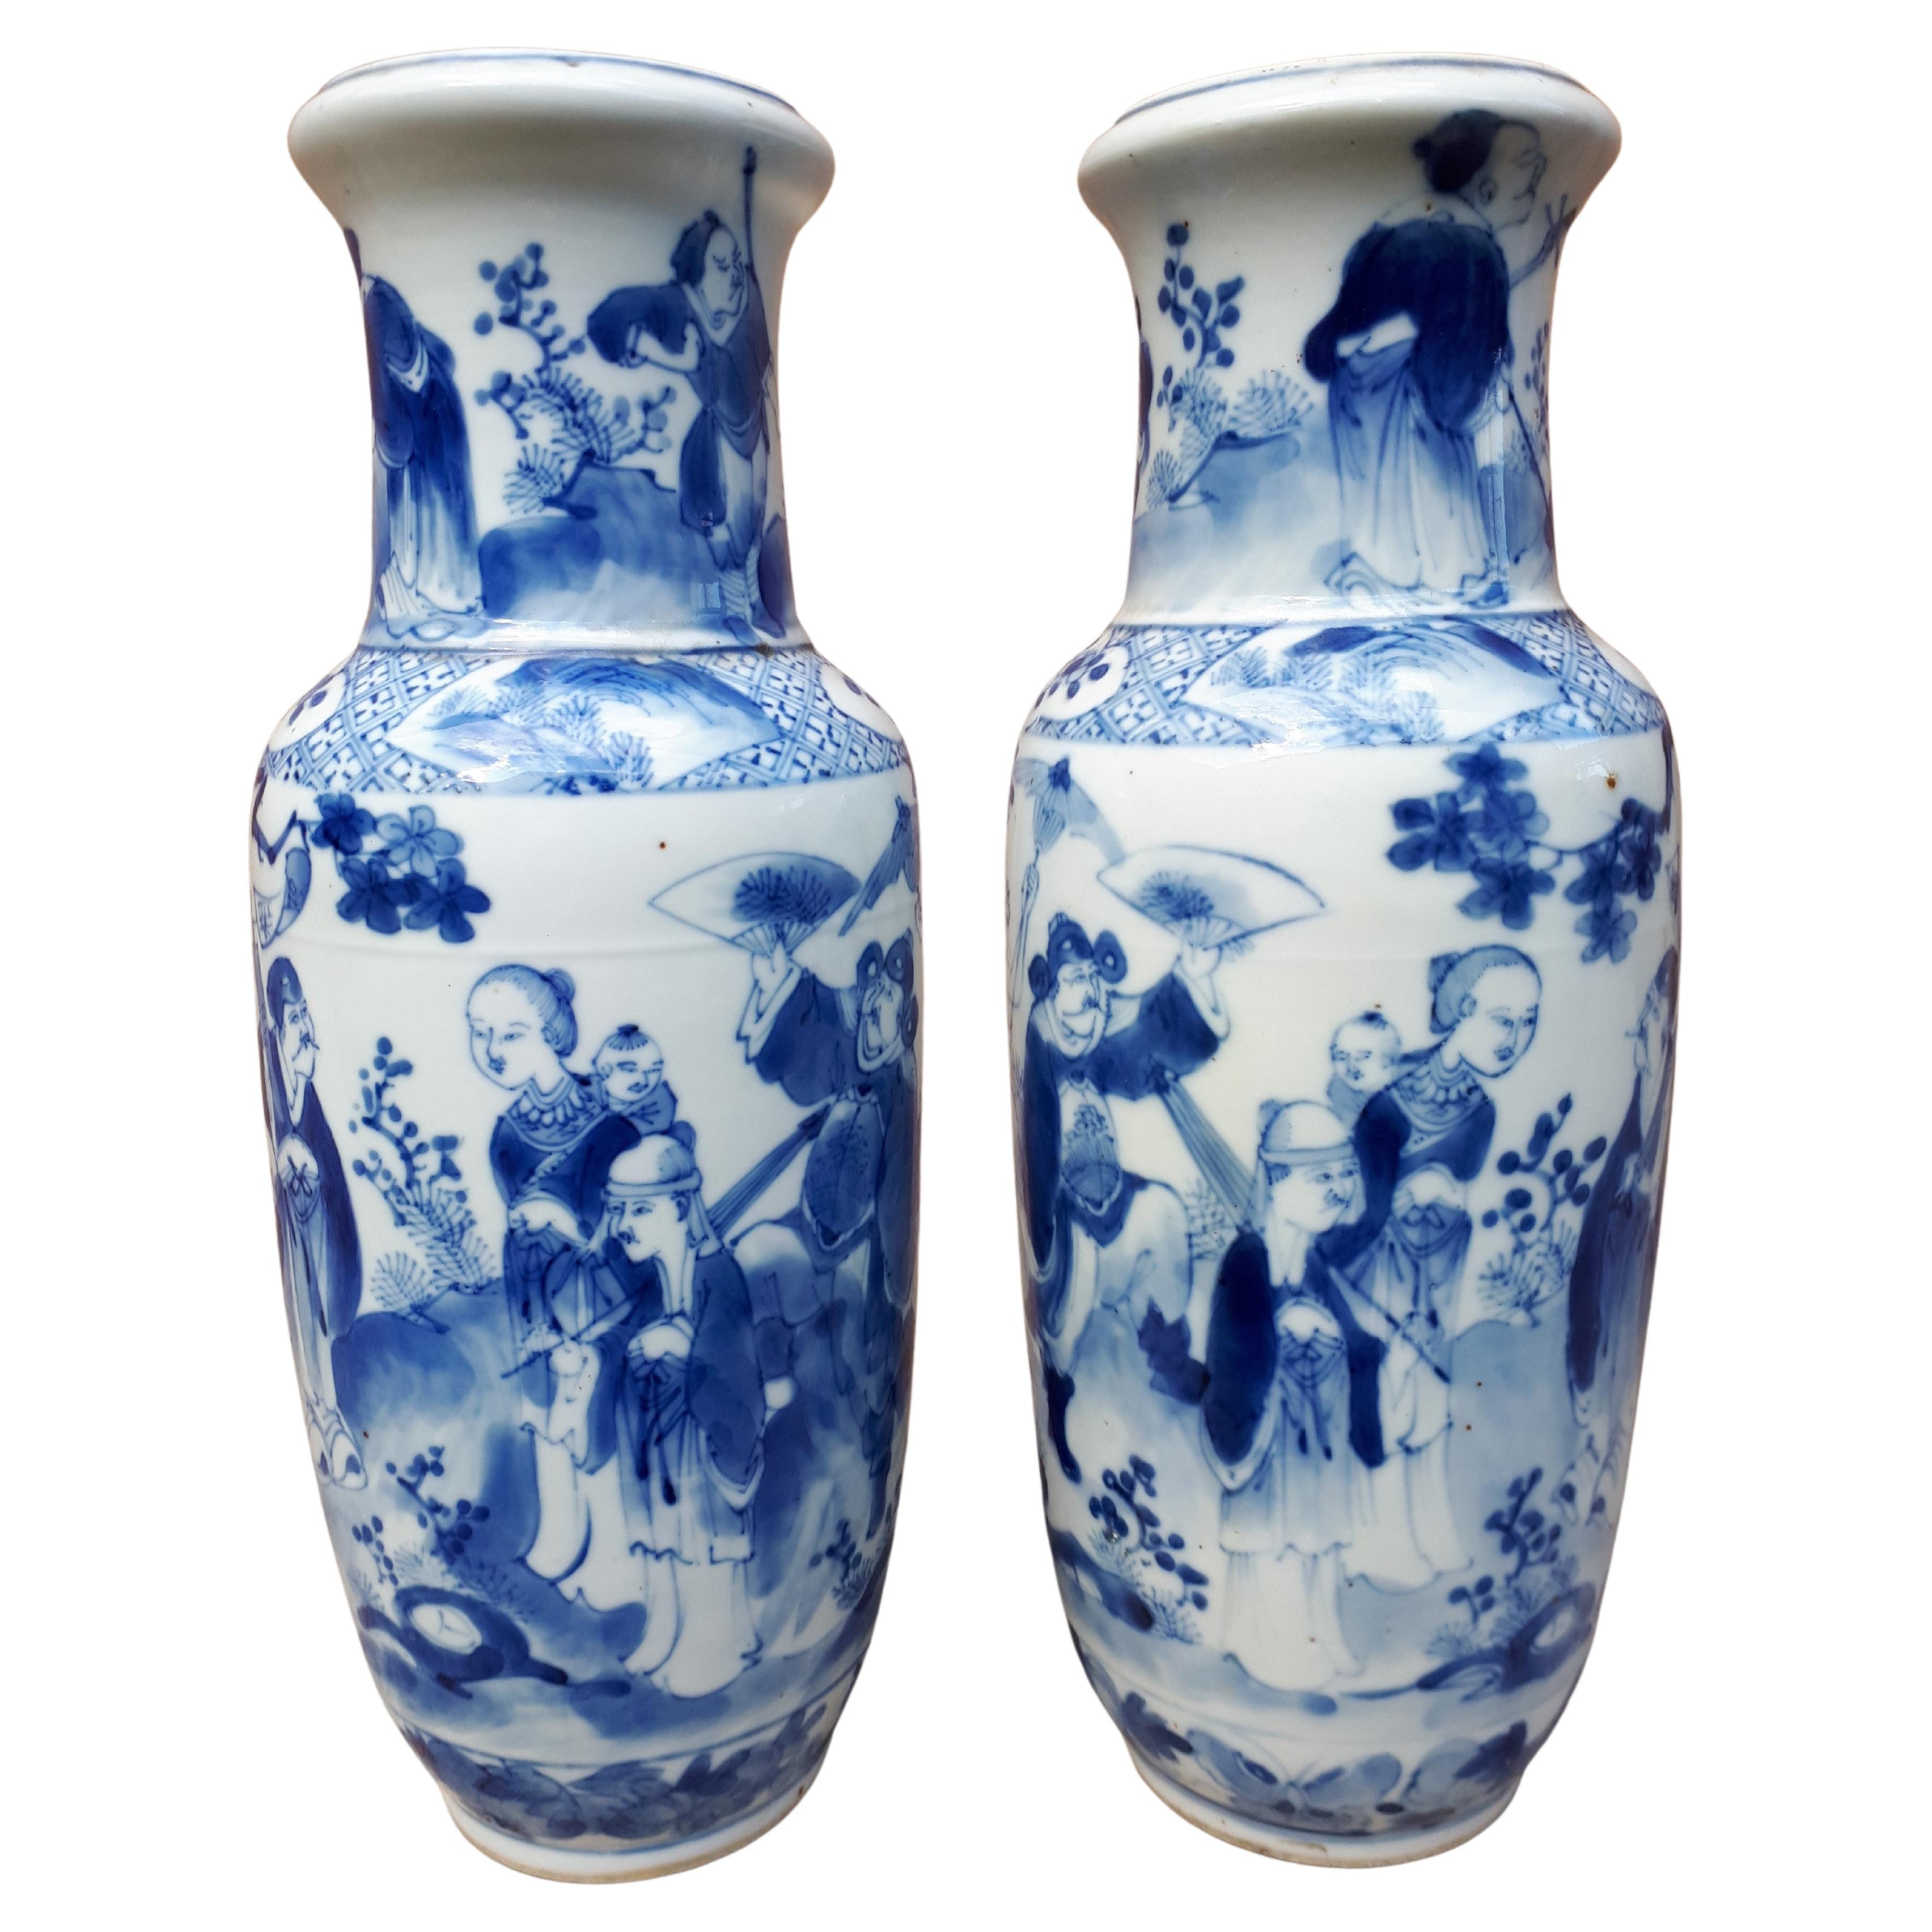 Paar chinesische blau-weiße Vasen, China Qing Dynasty